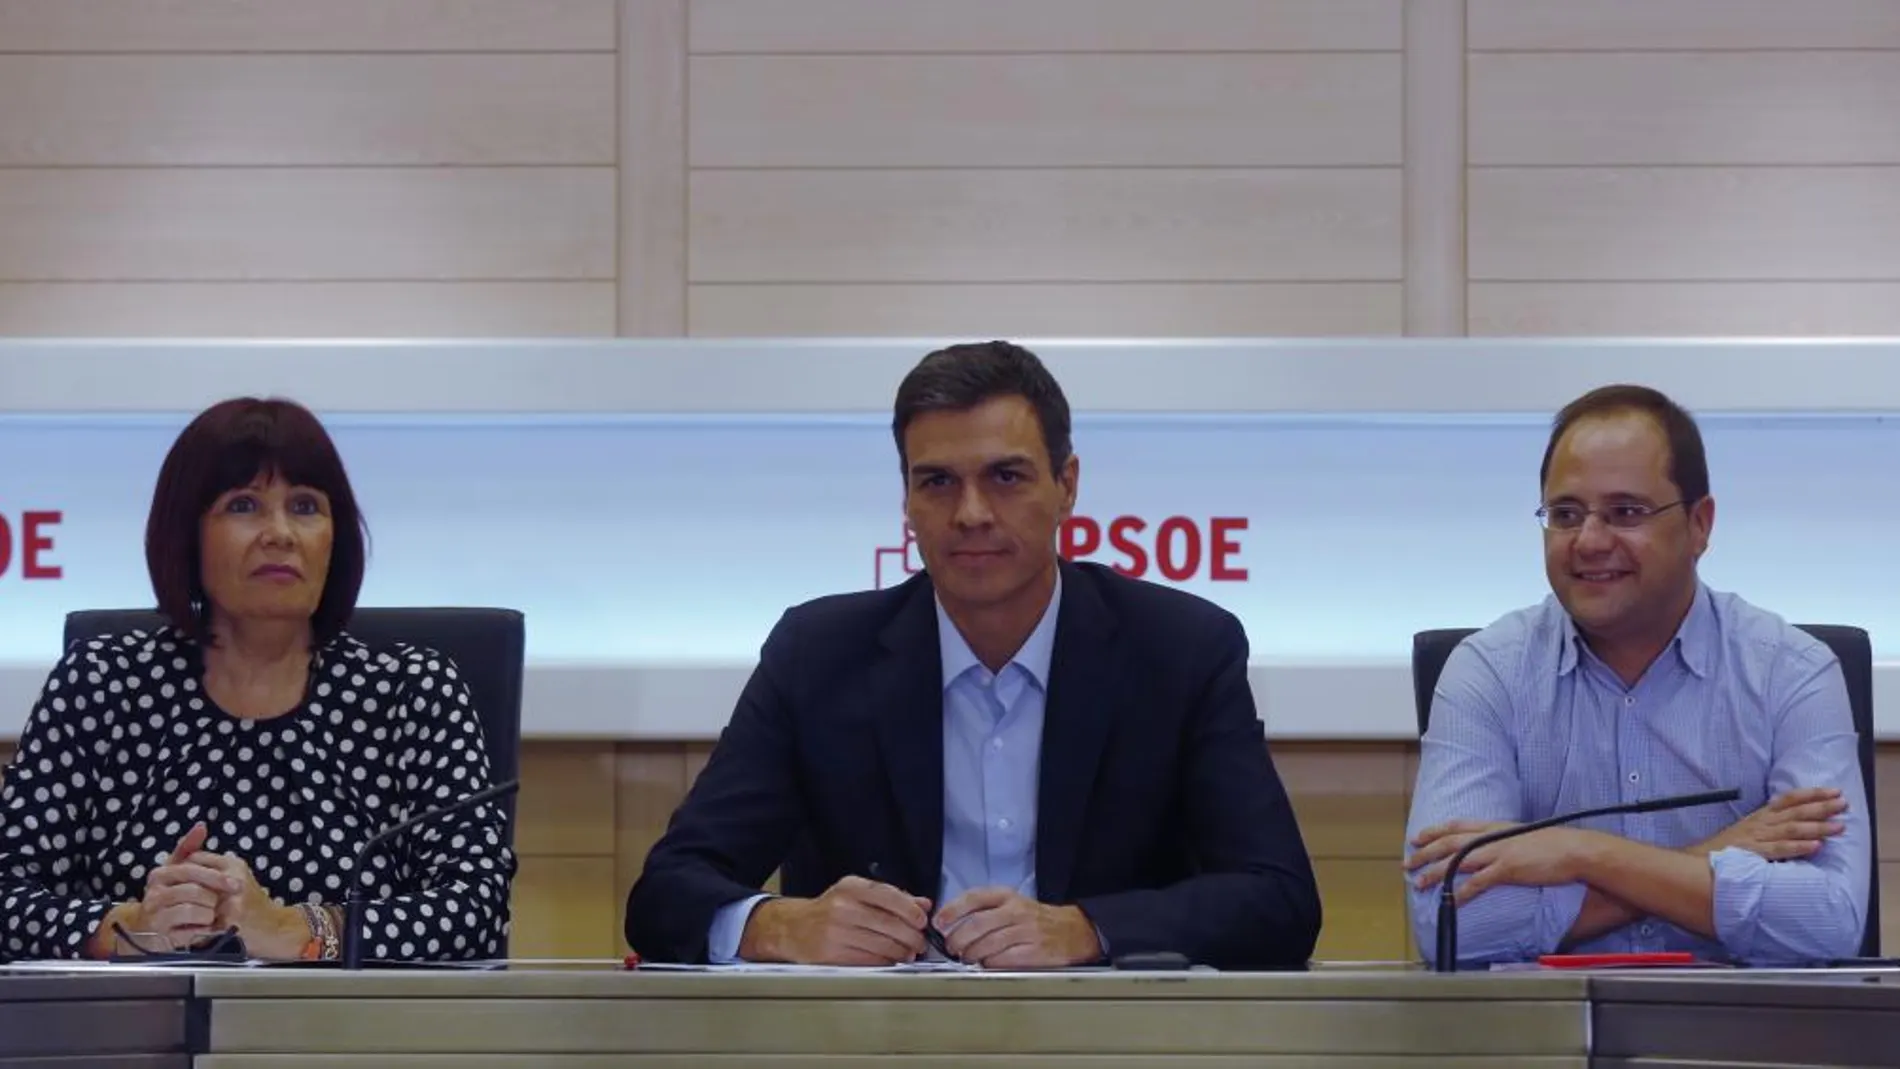 El líder del PSOE, Pedro Sánchez, durante la reunión de la Comisión permanente de La Ejecutiva Federal del PSOE, junto a Micaela Navarro y César Luena